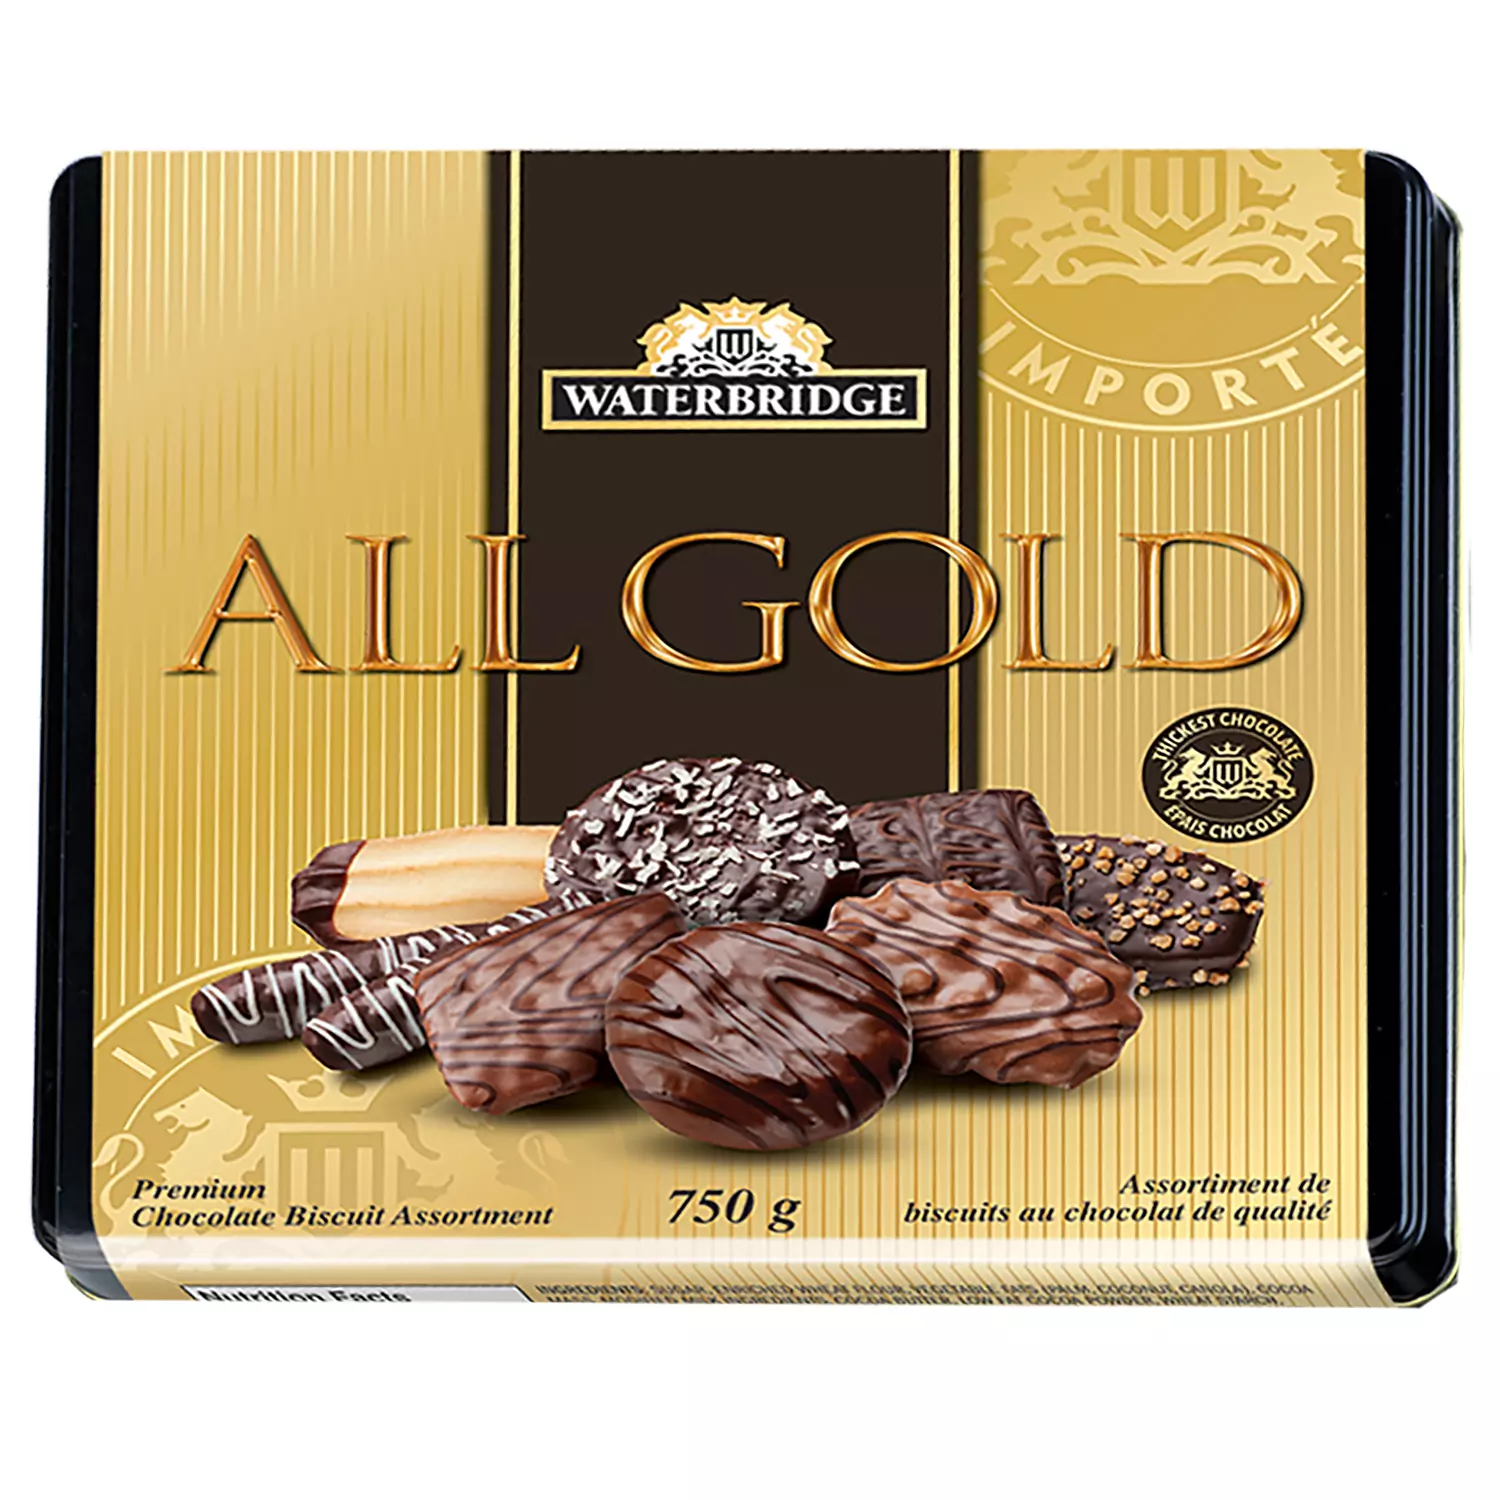 Waterbridge - All Gold - Assortiment de biscuits au chocolat de qualité dans une boîte cadeau en étain, 750g